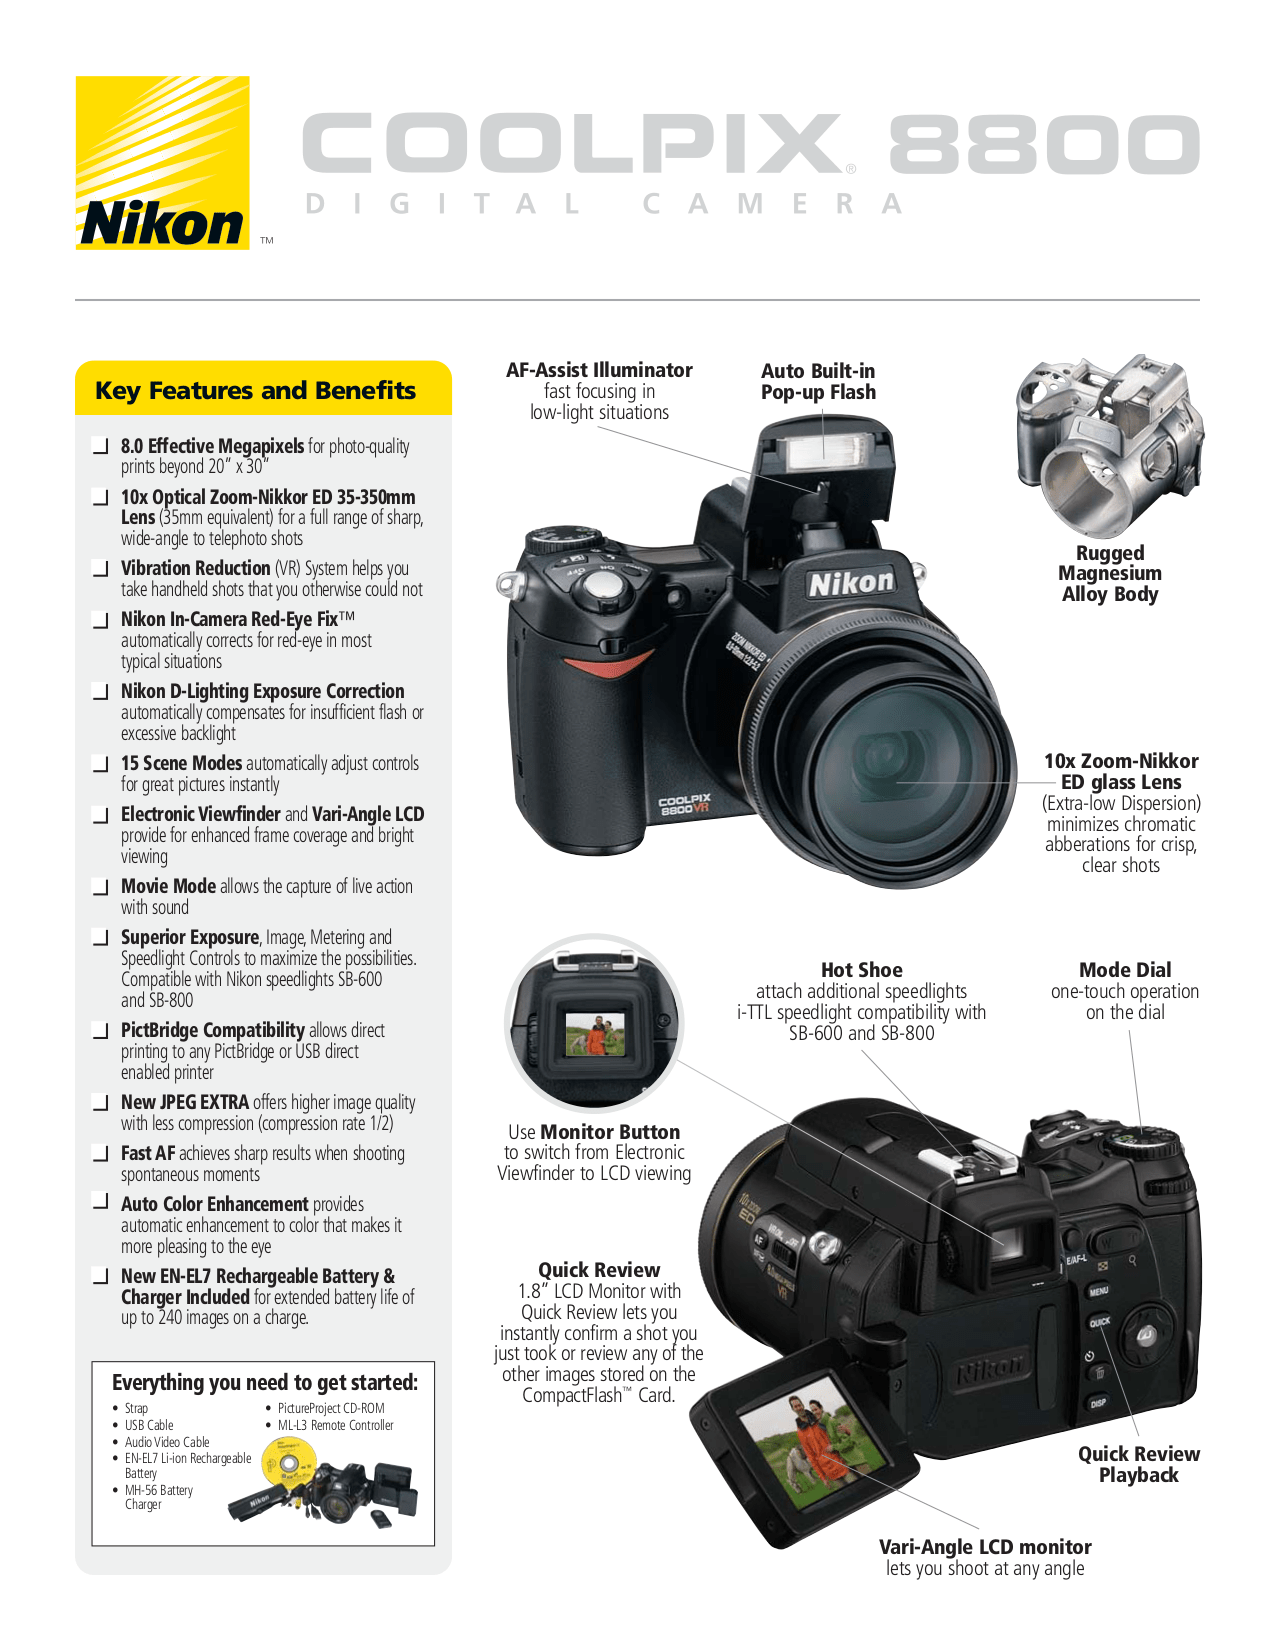 Download Nikon D3100 Manual